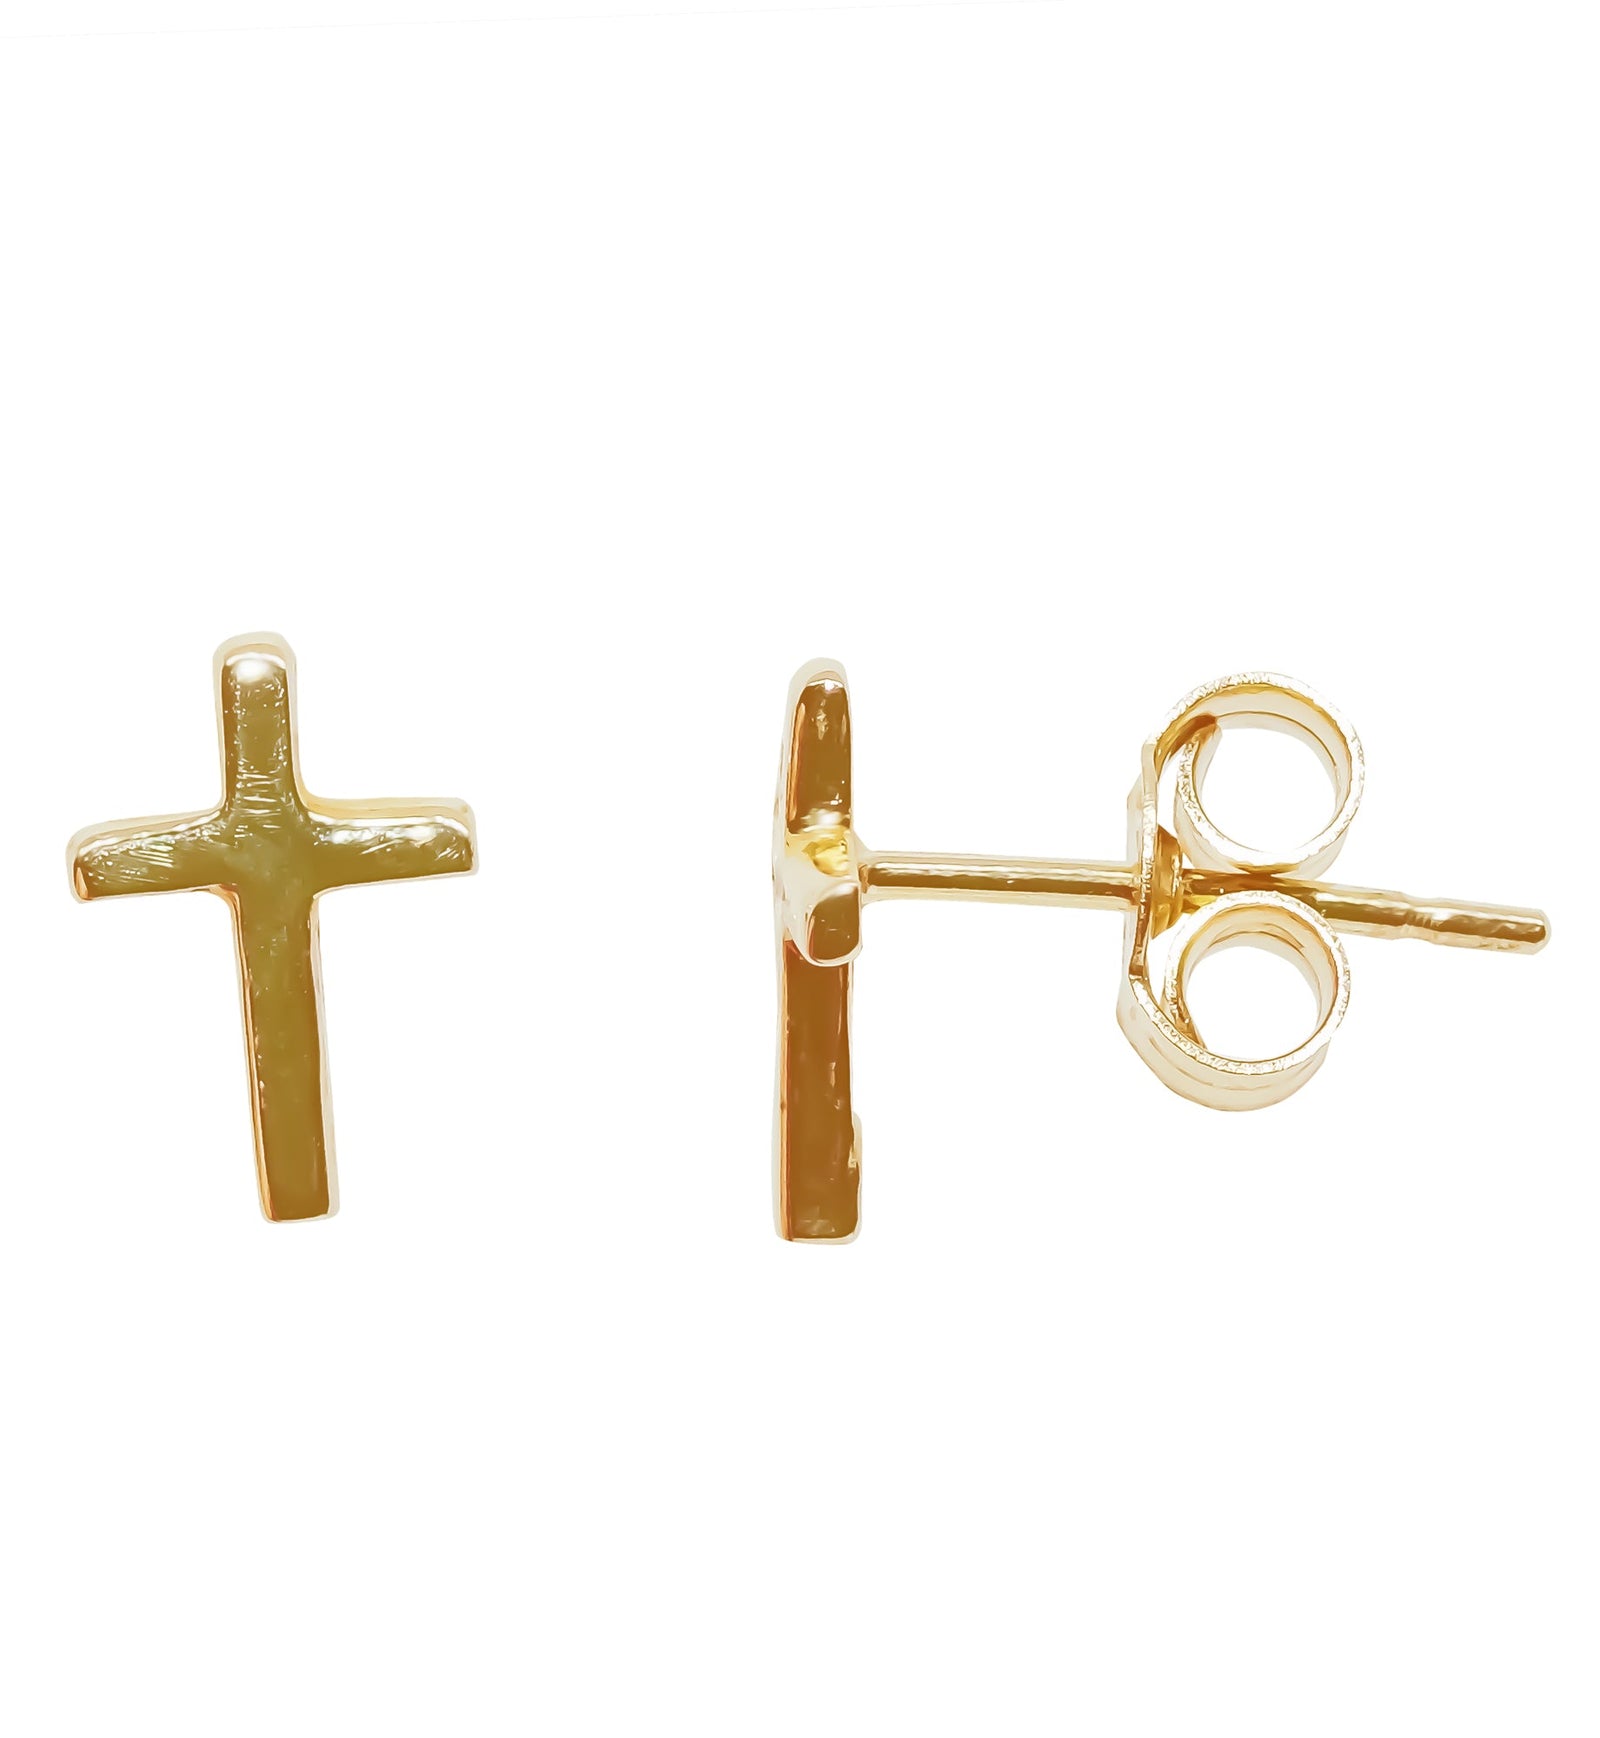 9ct gold cross stud earrings